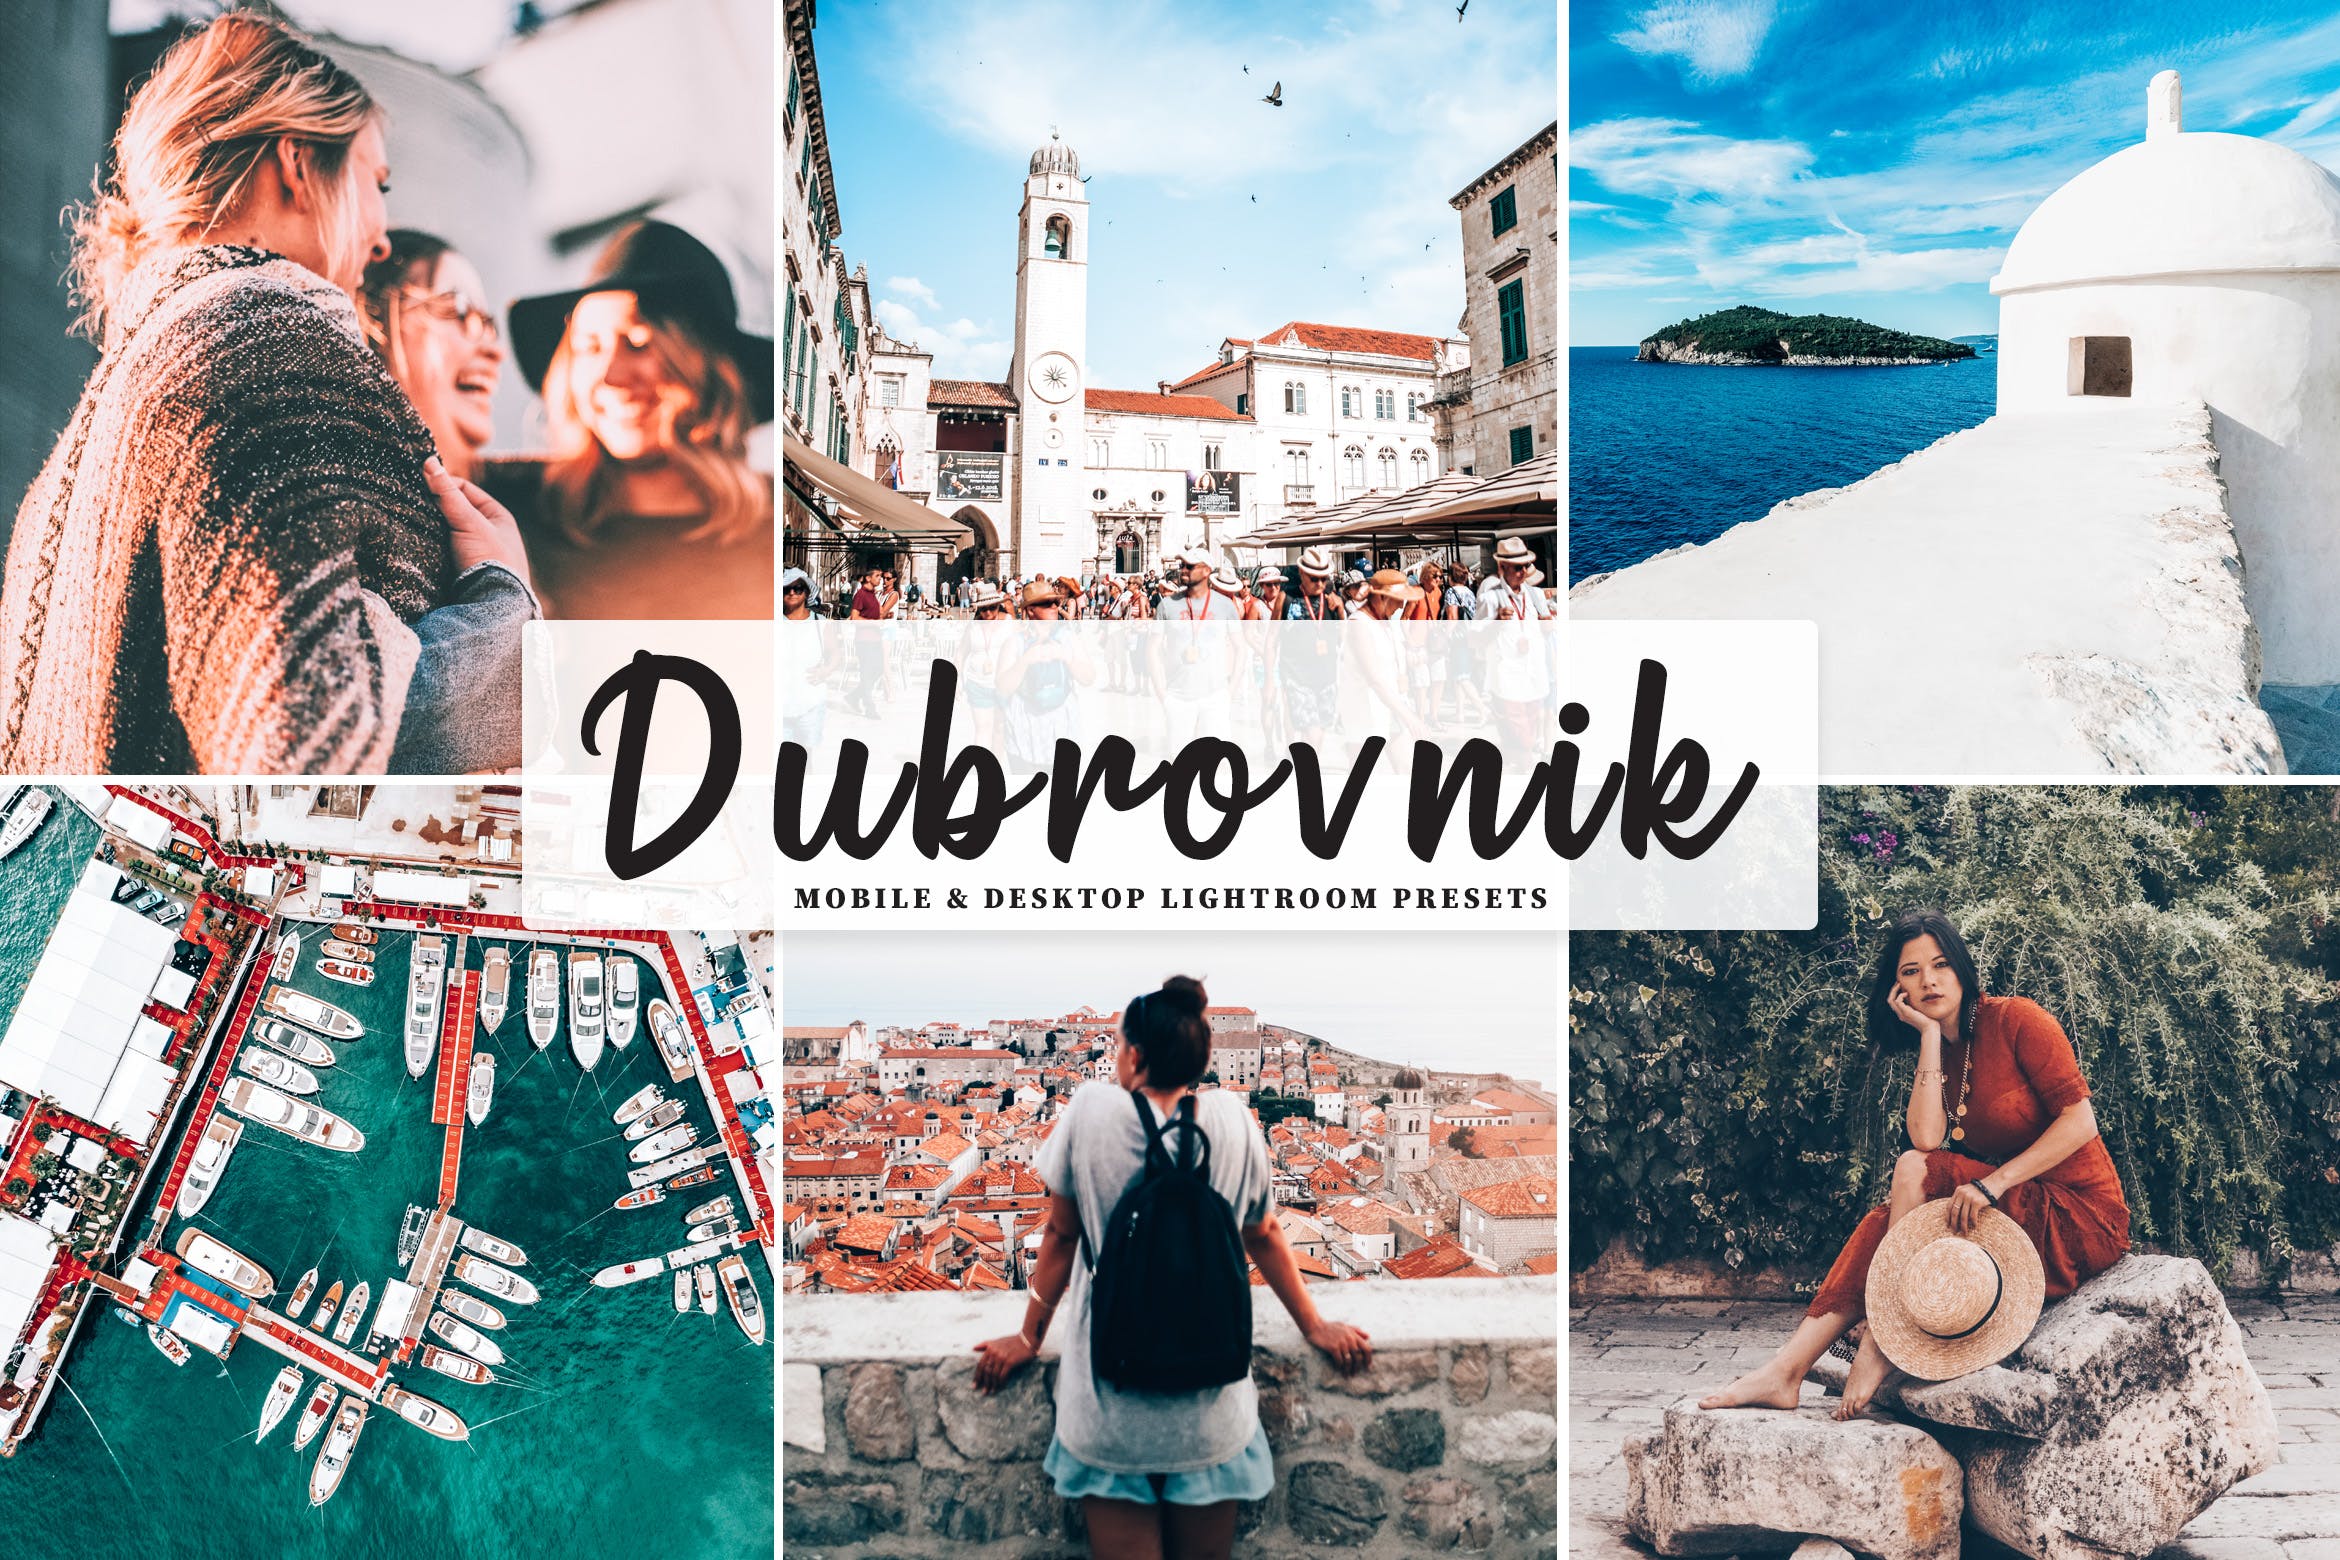 摄影爱好者必备的旅行照片调色处理第一素材精选LR预设 Dubrovnik Mobile & Desktop Lightroom Presets插图